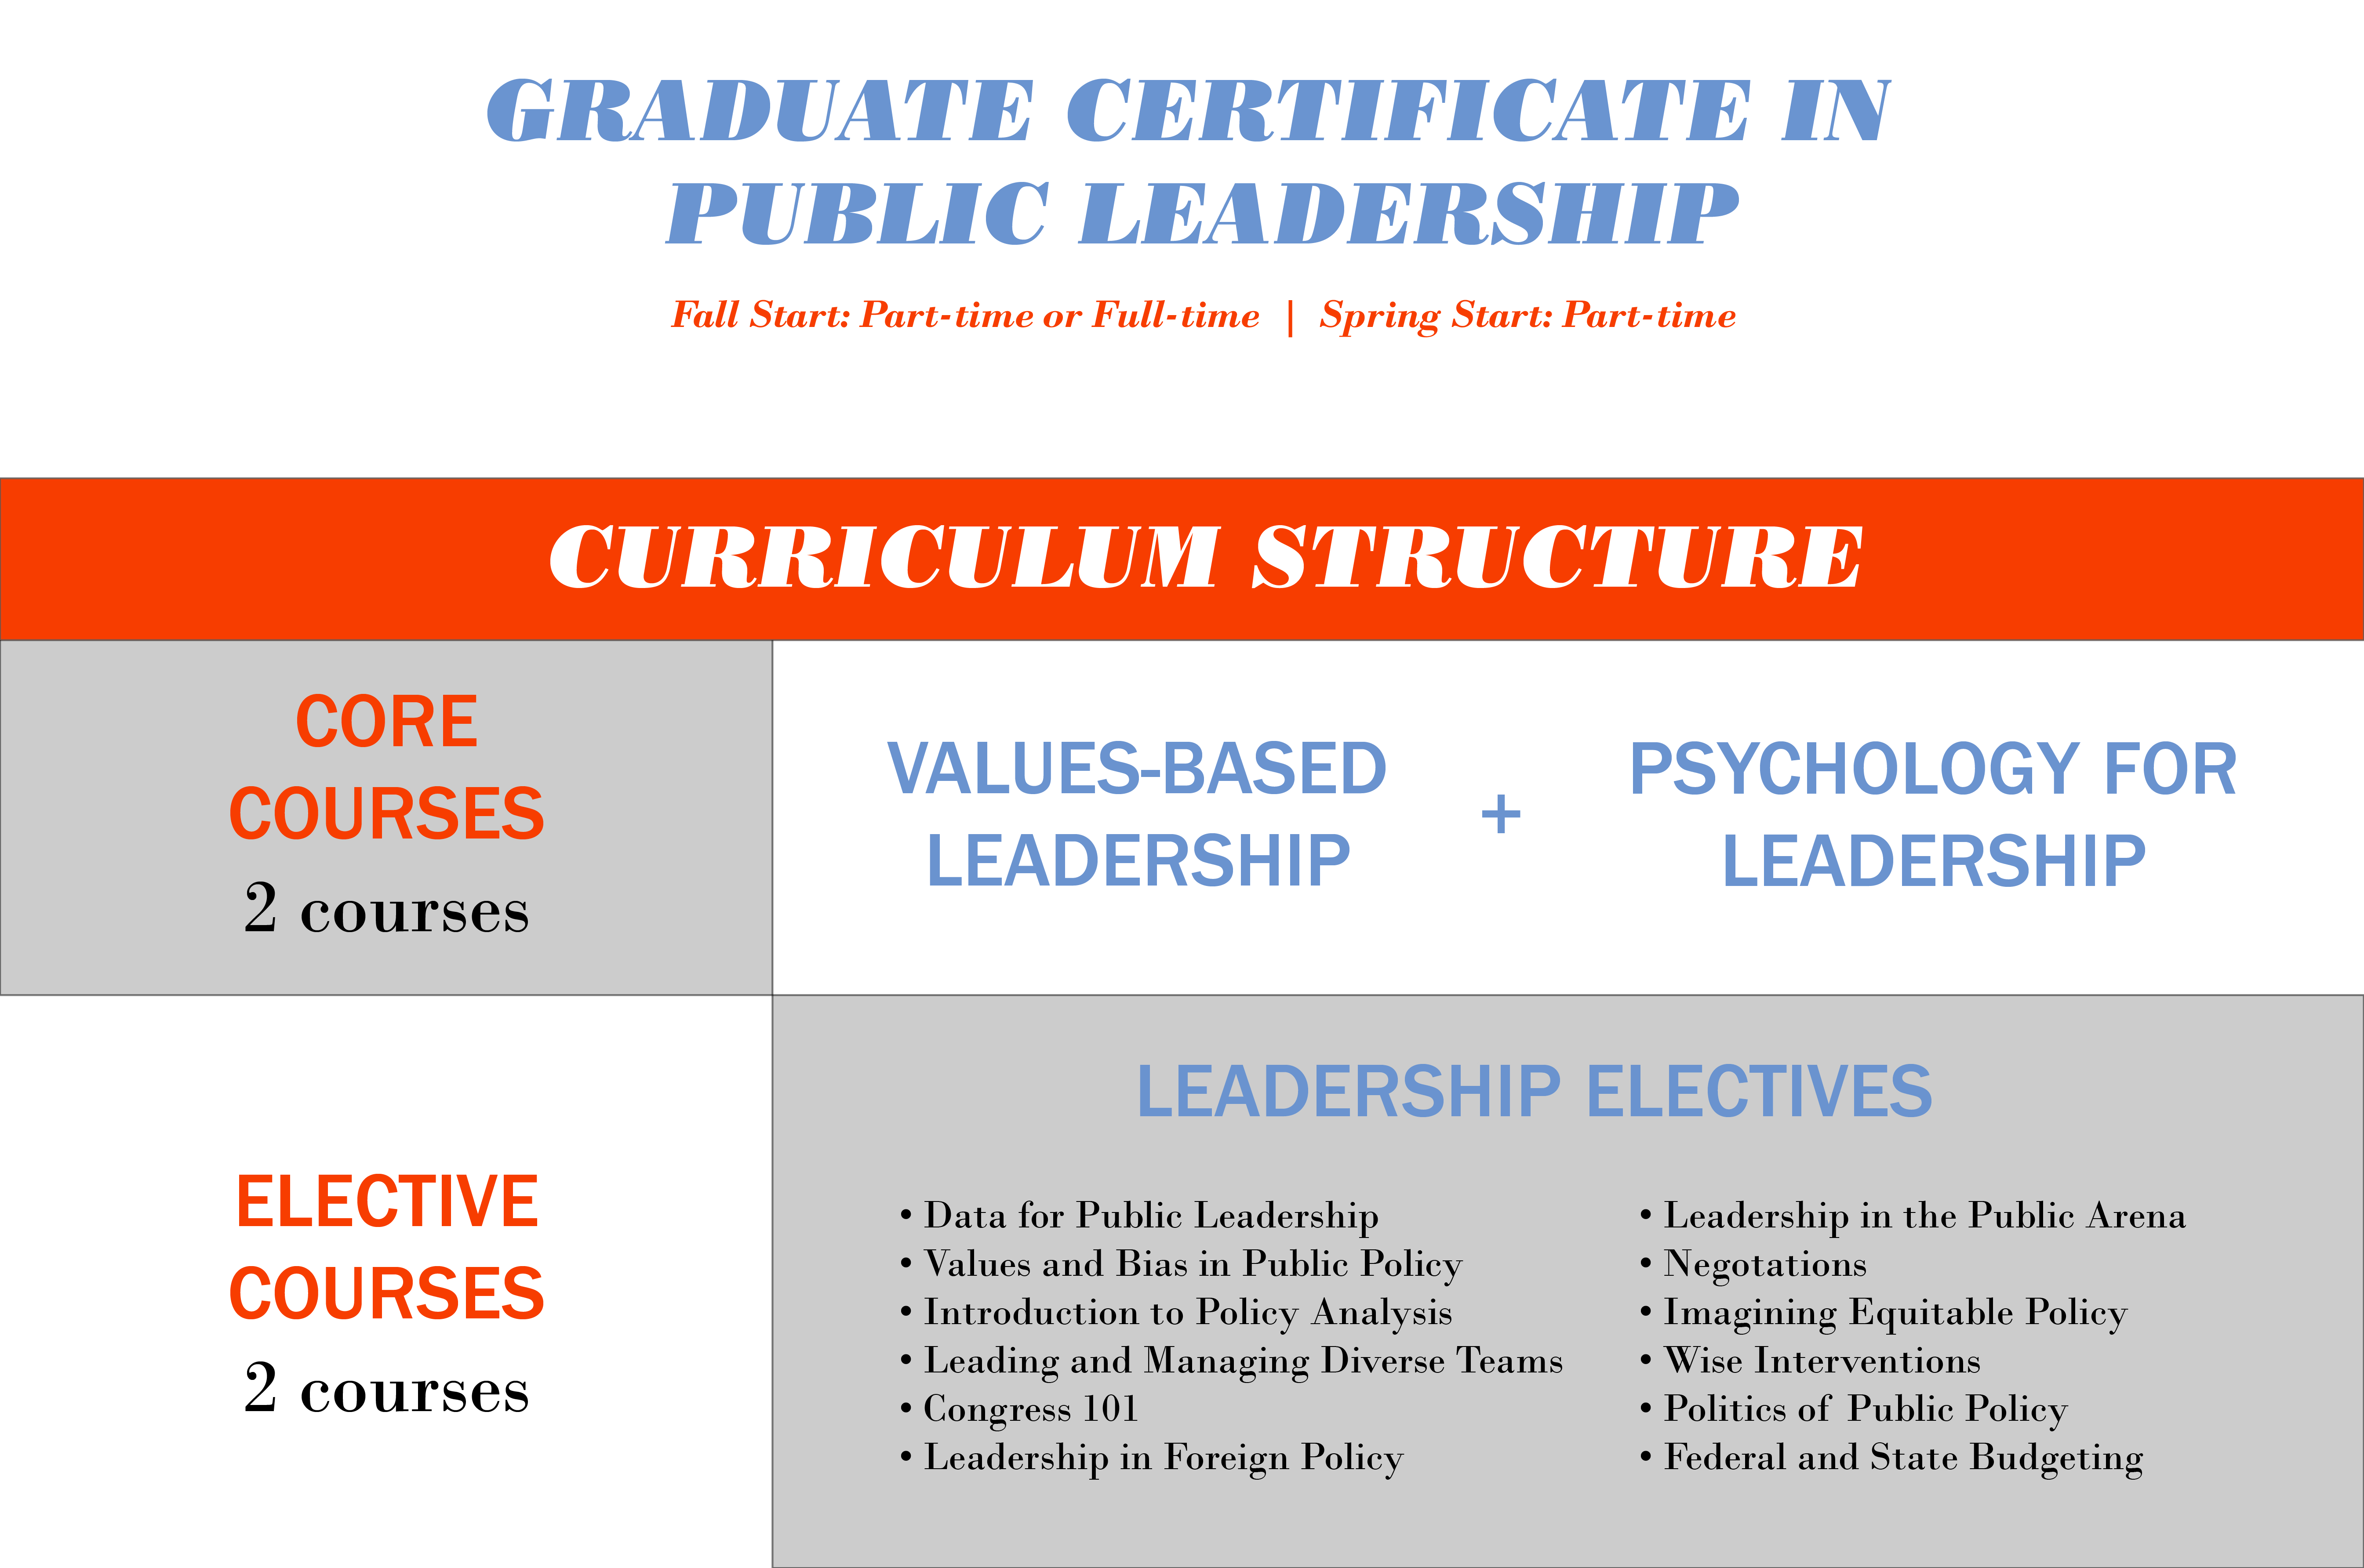 Graduate Certificate of Public Leadership